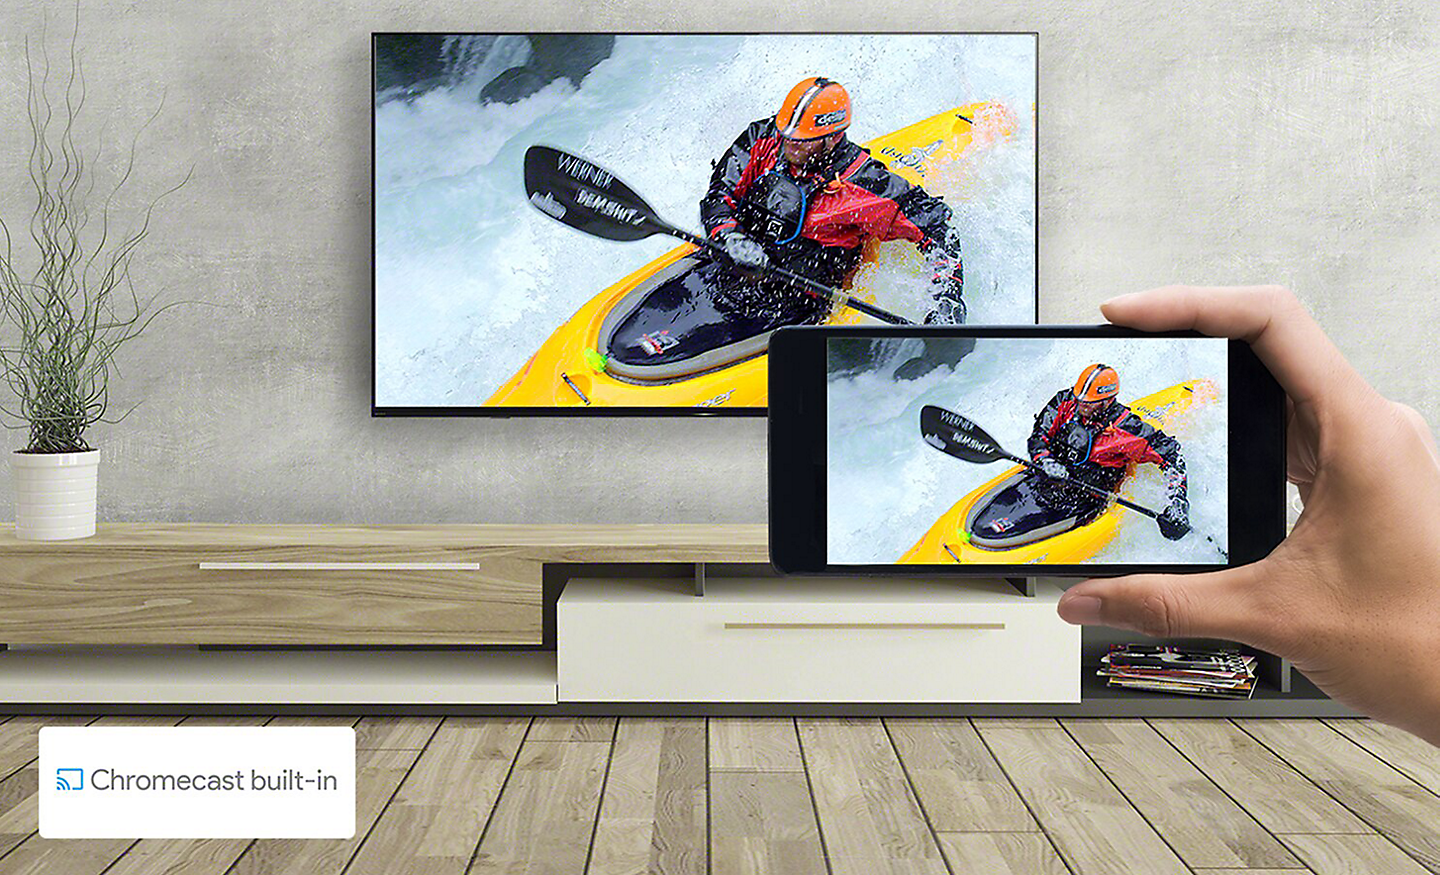 Σαλόνι με τηλεόραση και ένα χέρι που κρατάει ένα smartphone. Και οι δύο οθόνες δείχνουν την ίδια εικόνα με καγιάκ.